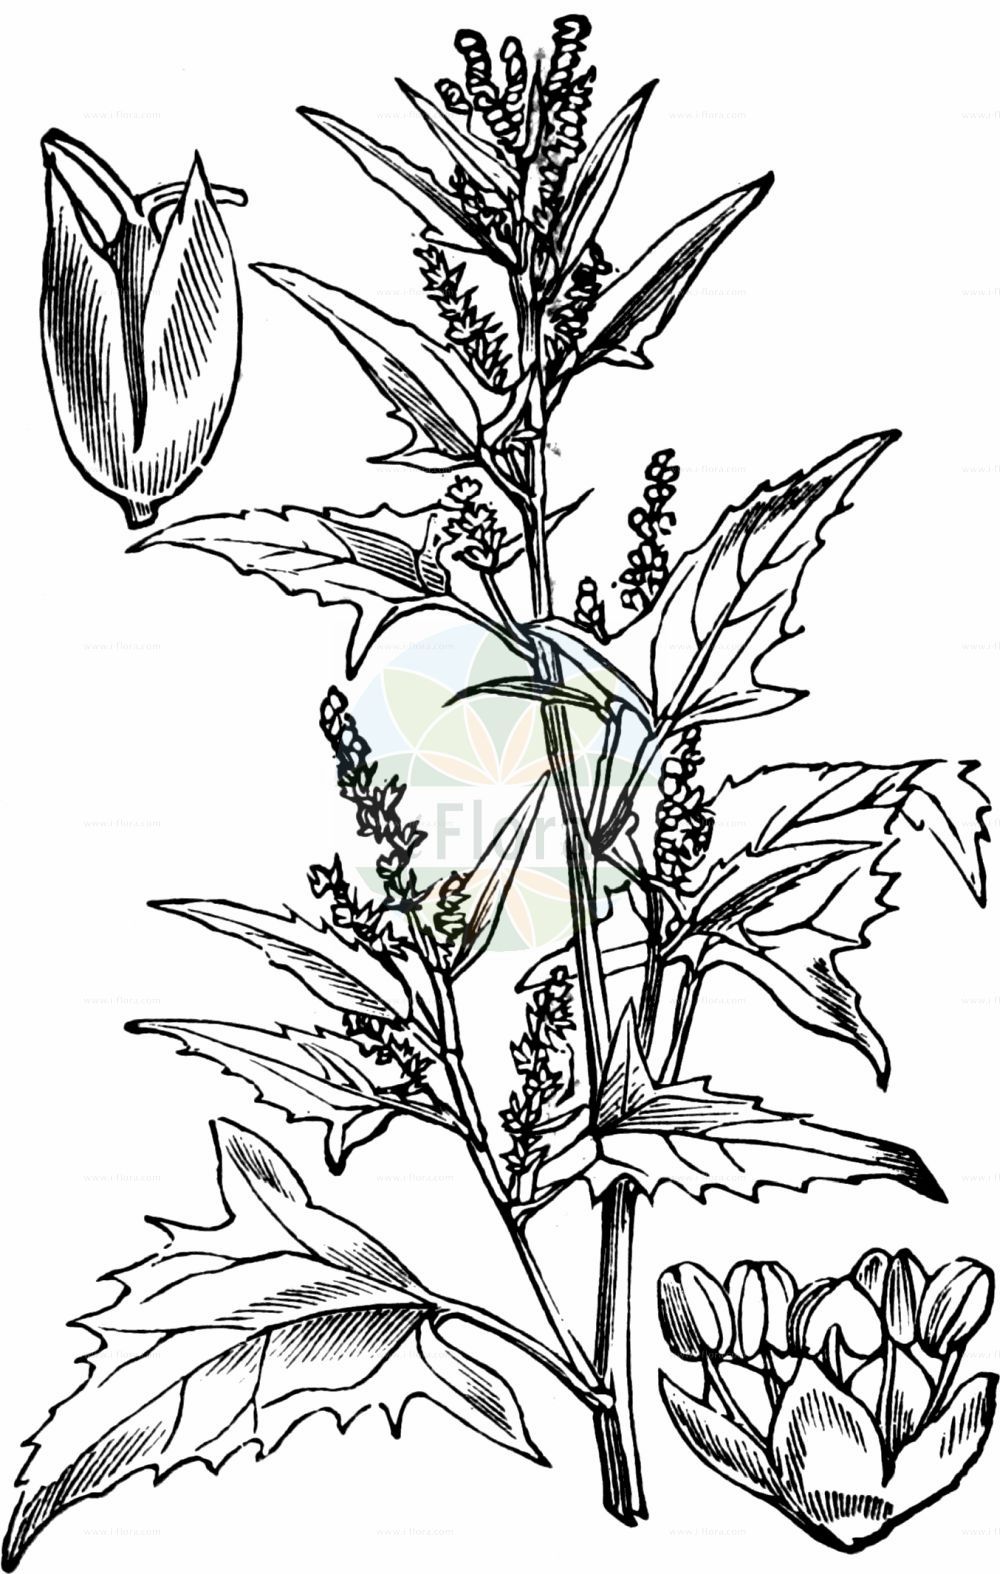 Historische Abbildung von Atriplex patula (Spreizende Melde - Common Orache). Das Bild zeigt Blatt, Bluete, Frucht und Same. ---- Historical Drawing of Atriplex patula (Spreizende Melde - Common Orache). The image is showing leaf, flower, fruit and seed.(Atriplex patula,Spreizende Melde,Common Orache,Atriplex amana,Atriplex angustifolia,Atriplex erecta,Atriplex macrodira,Atriplex patula,Atriplex patula subsp. producta,Spreizende Melde,Common Orache,Gmelin's Saltbush,Spear Saltbush,Halberdleaf Orache,Spreading Orache,Atriplex,Melde,Saltbush,Amaranthaceae,Fuchsschwanzgewächse,Pigweed family,Blatt,Bluete,Frucht,Same,leaf,flower,fruit,seed,Fitch et al. (1880))